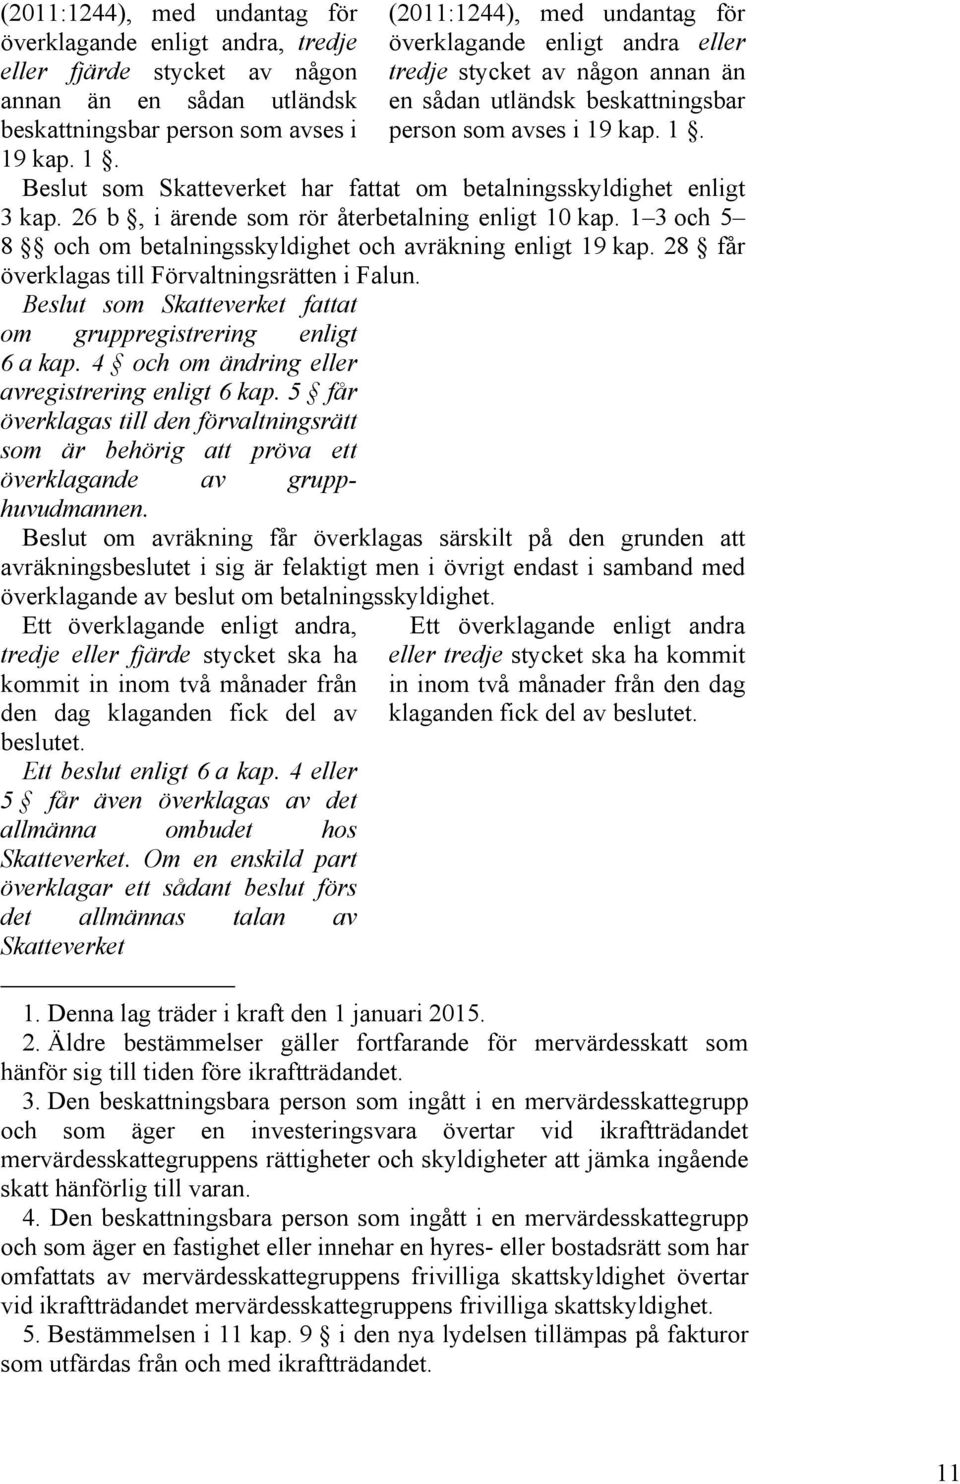 26 b, i ärende som rör återbetalning enligt 10 kap. 1 3 och 5 8 och om betalningsskyldighet och avräkning enligt 19 kap. 28 får överklagas till Förvaltningsrätten i Falun.